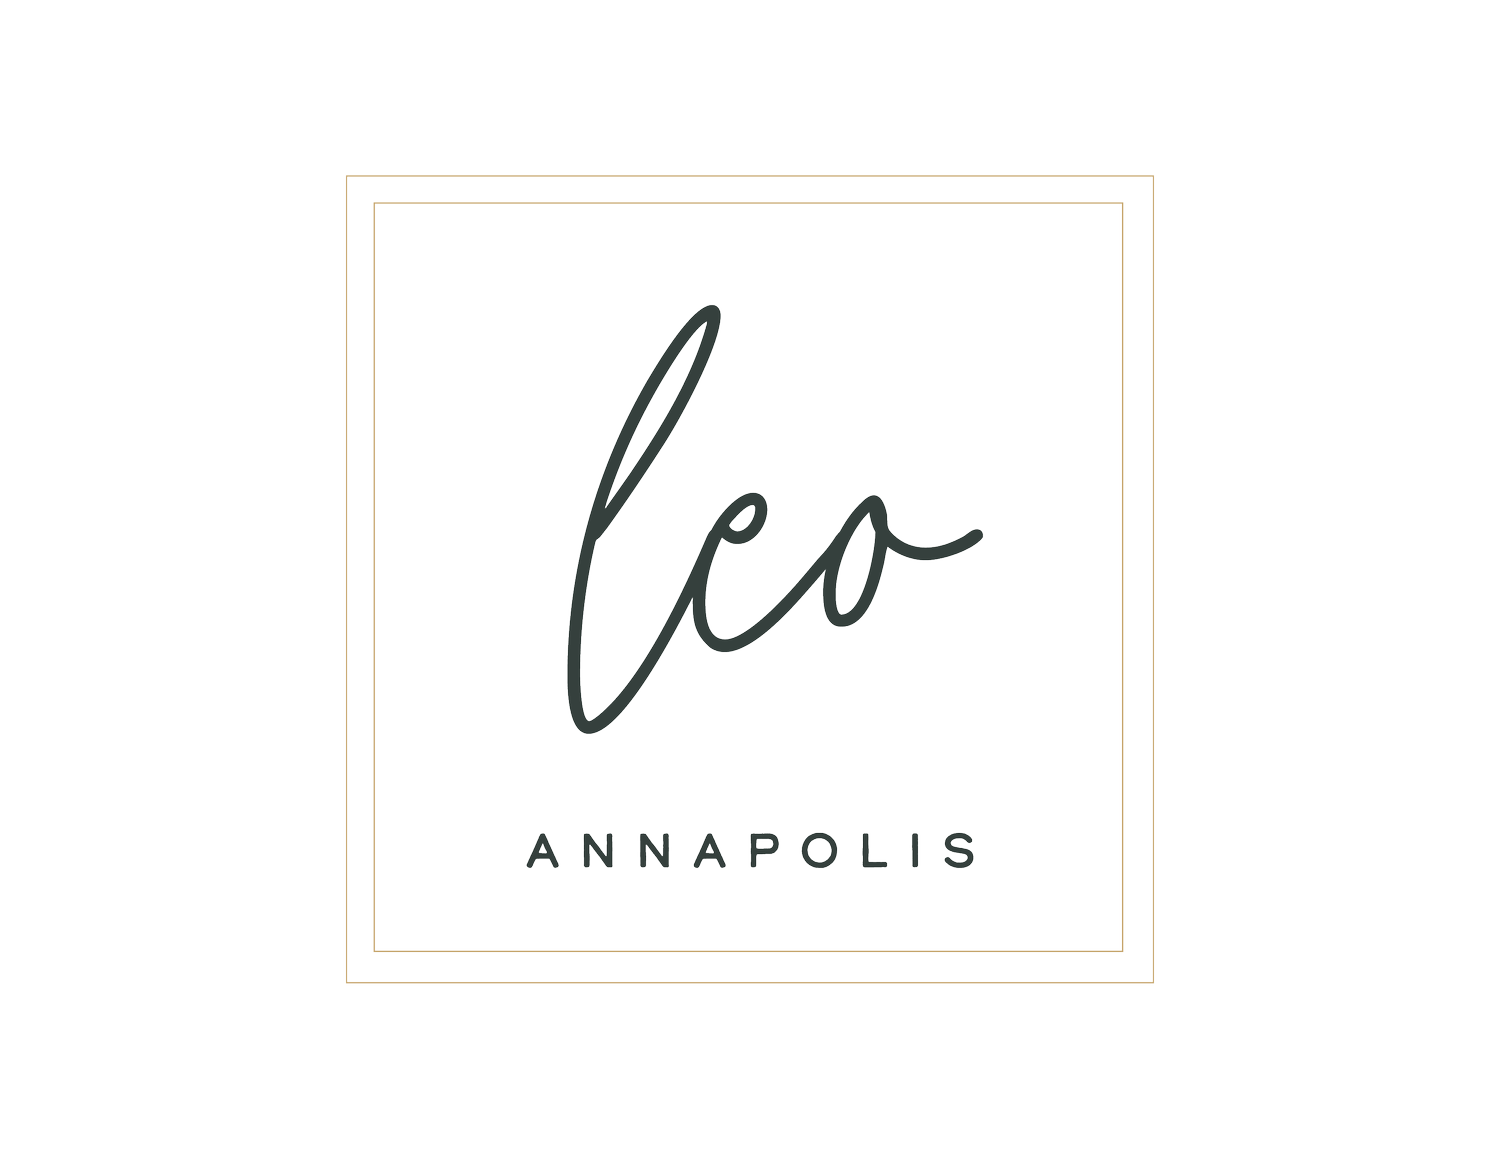 Leo Annapolis